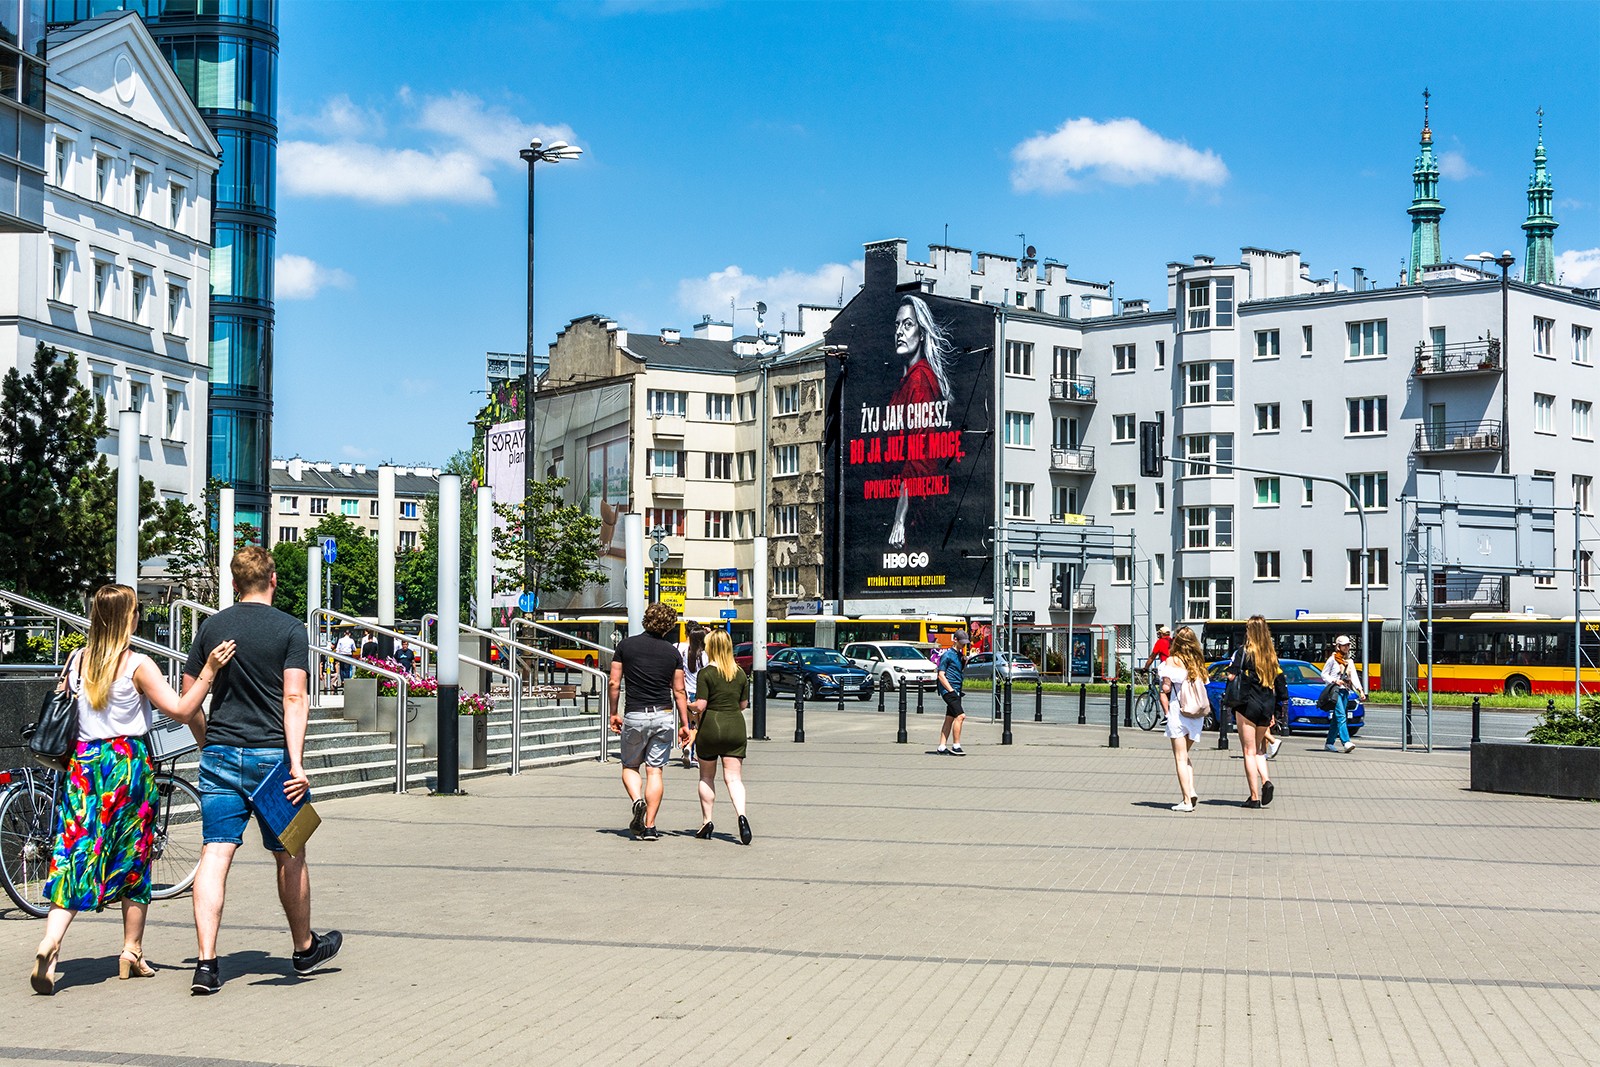 Mural reklamowy HBO GO Opowieść podręcznej ul. Jaworzyńska 9 Warszawa | Opowieść podręcznej | Portfolio